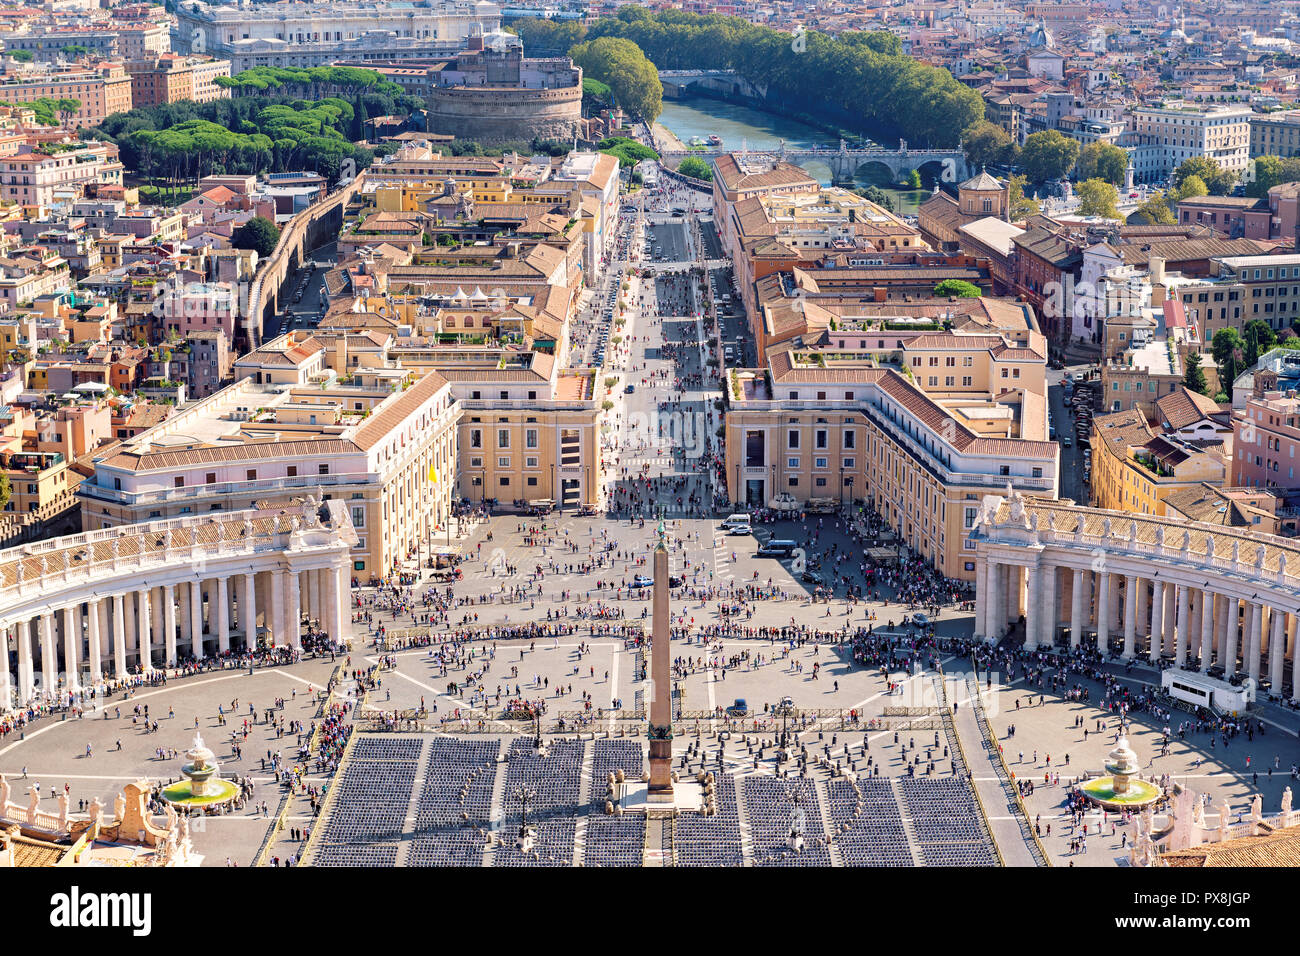 Vue aérienne de la célèbre Place Saint-Pierre au Vatican Banque D'Images